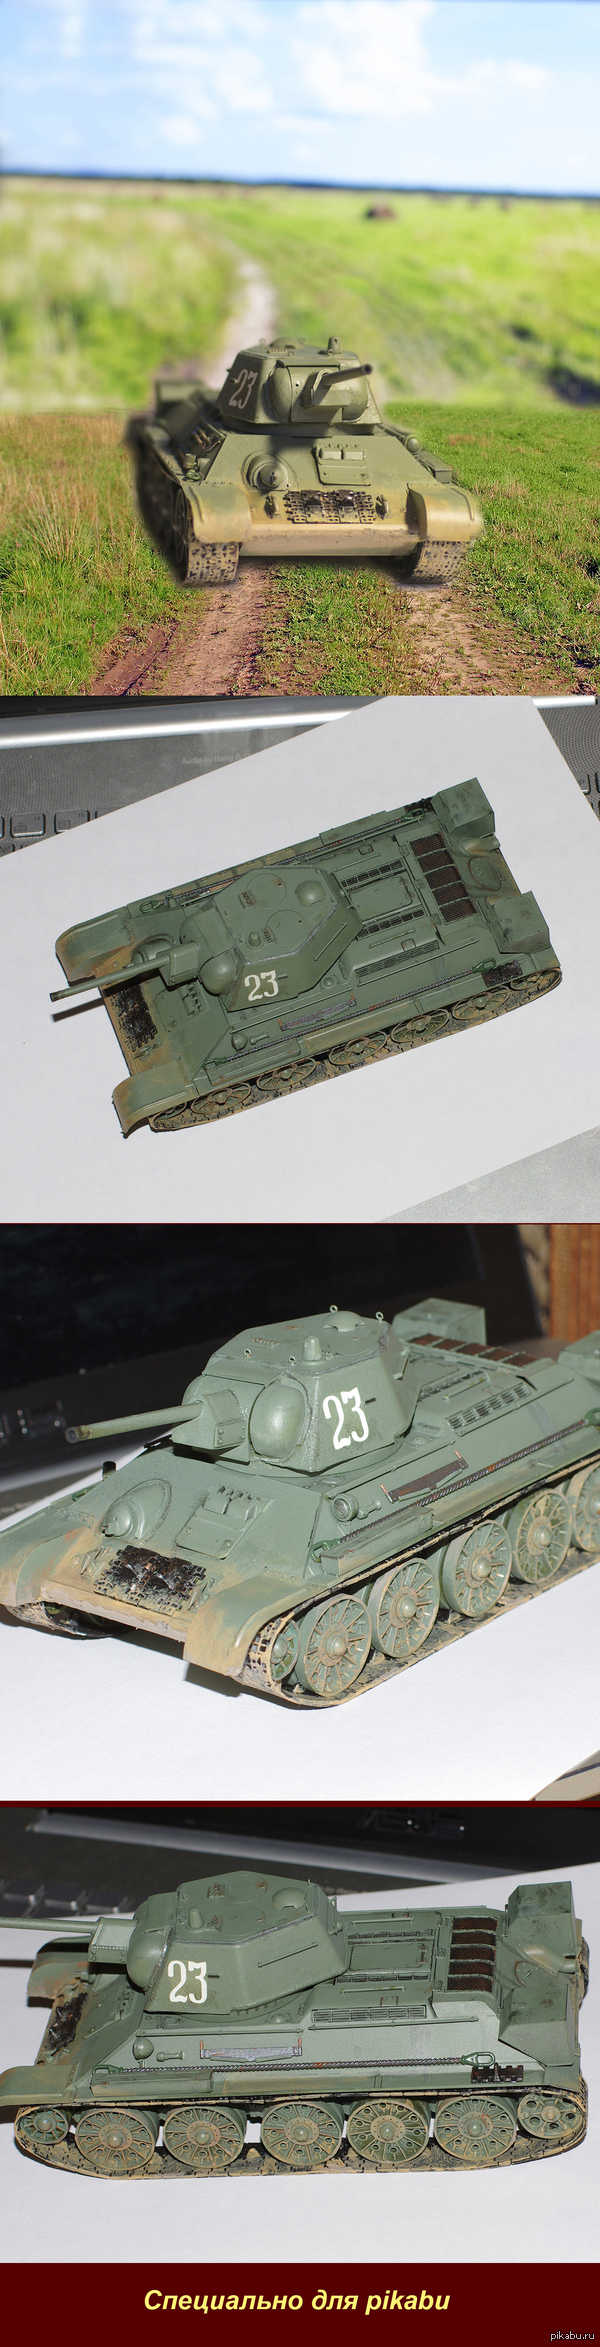 T-34    ,   ,)   .